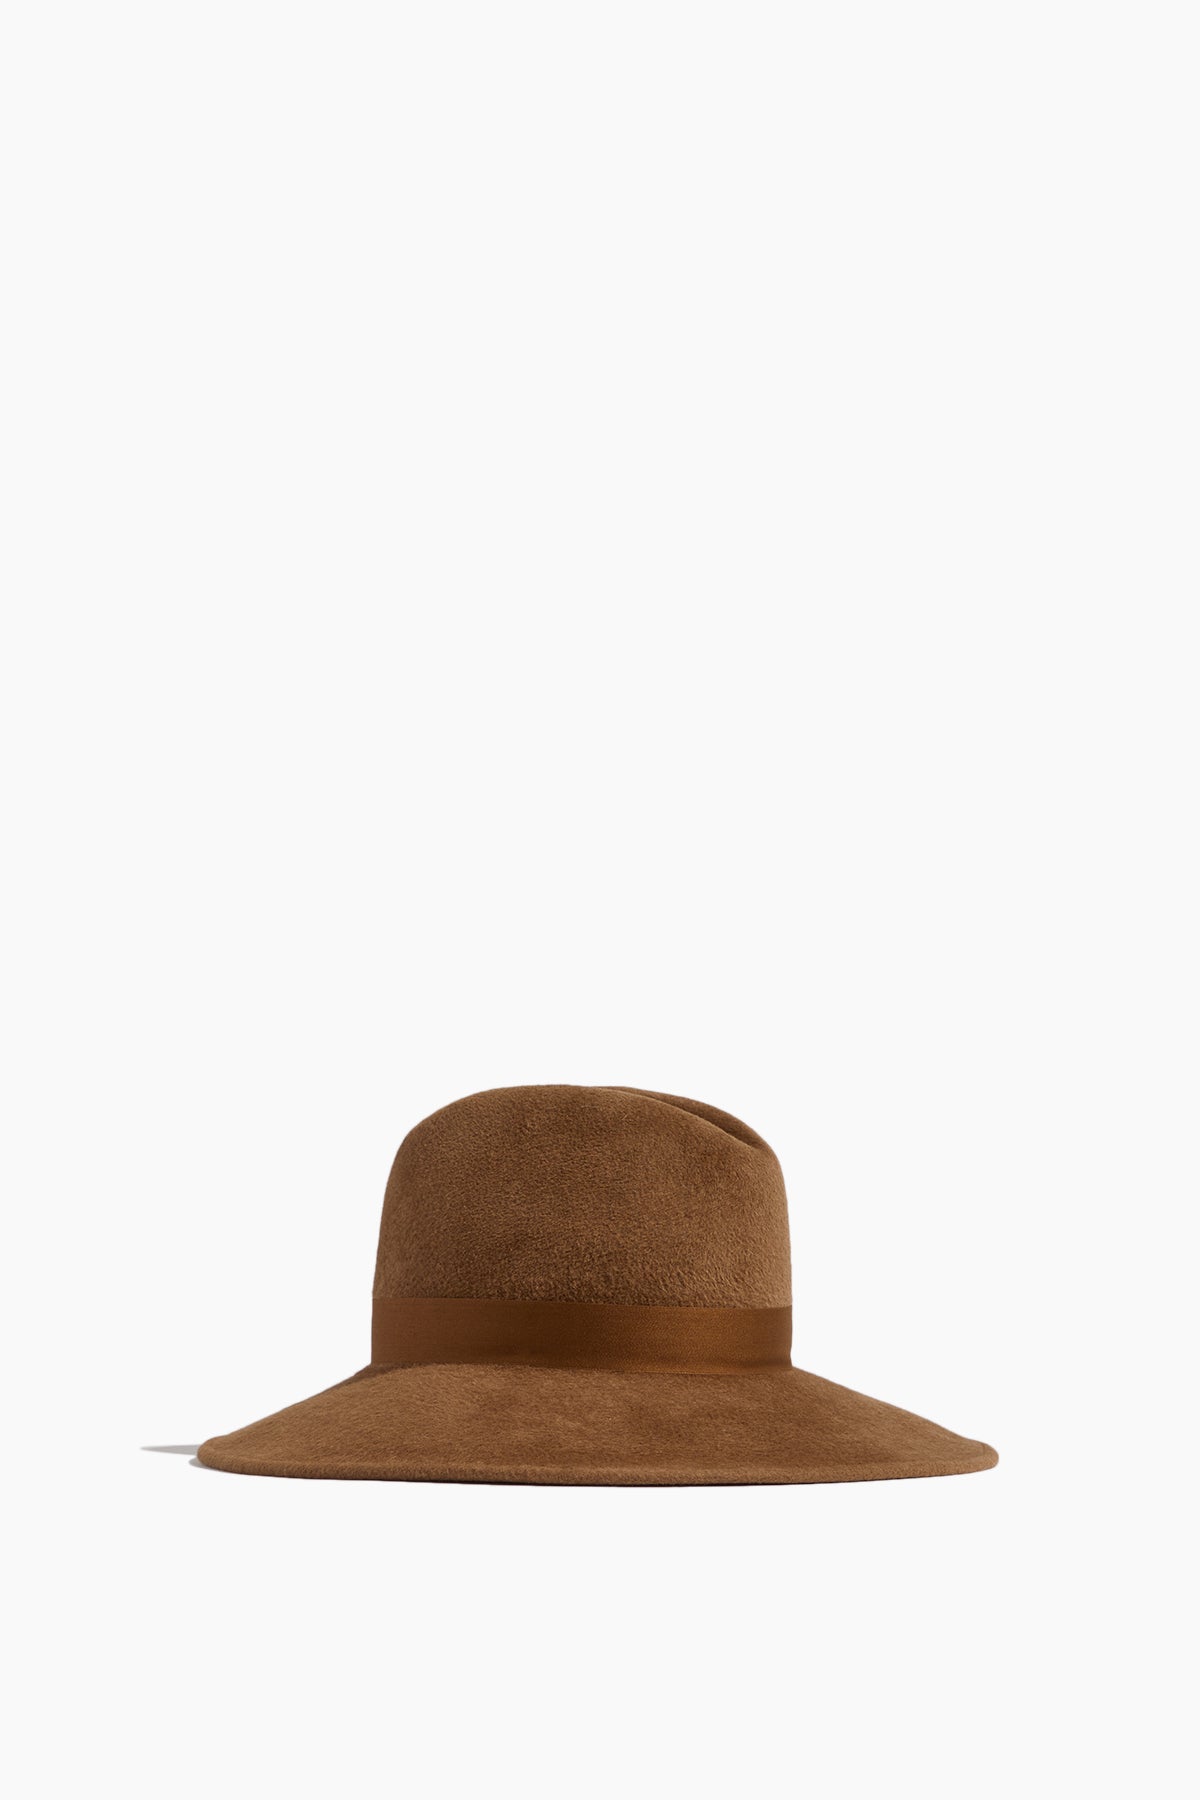 Gigi Burris Hats Requiem Hat in Pecan